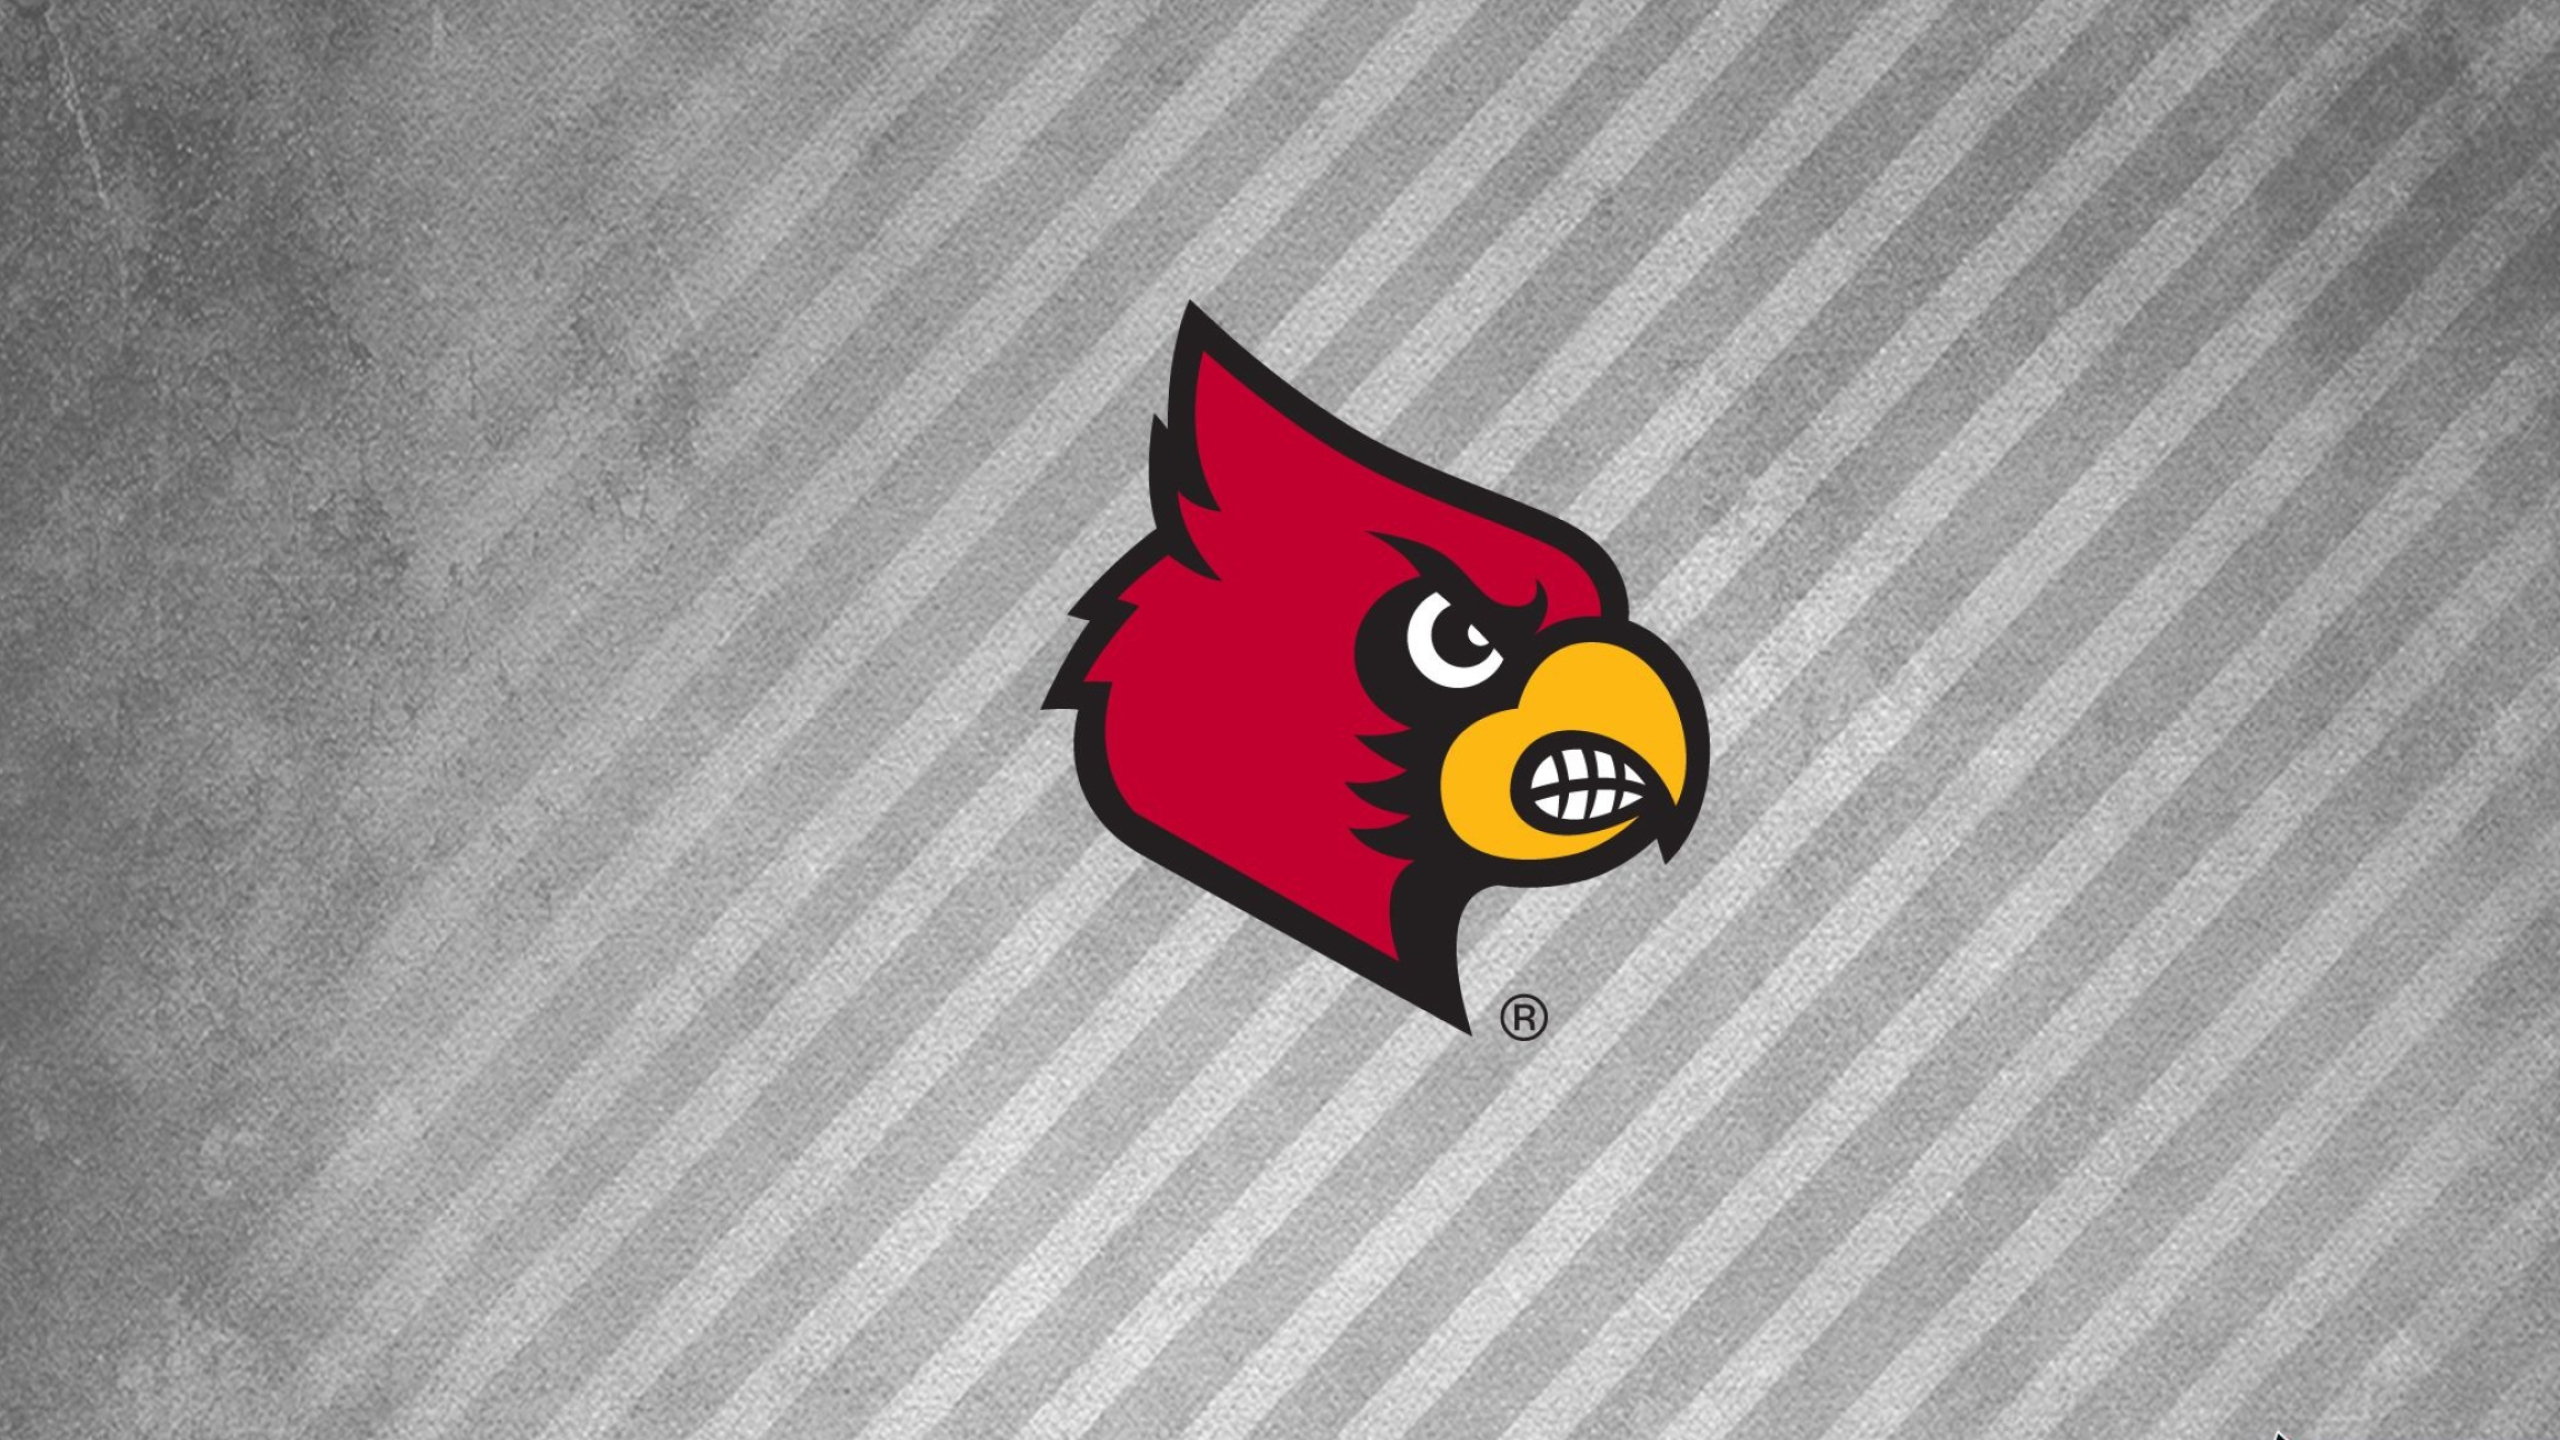 Louisville Cardinals, Dynamic wallpapers, Team pride, Sports fandom, 2560x1440 HD Desktop